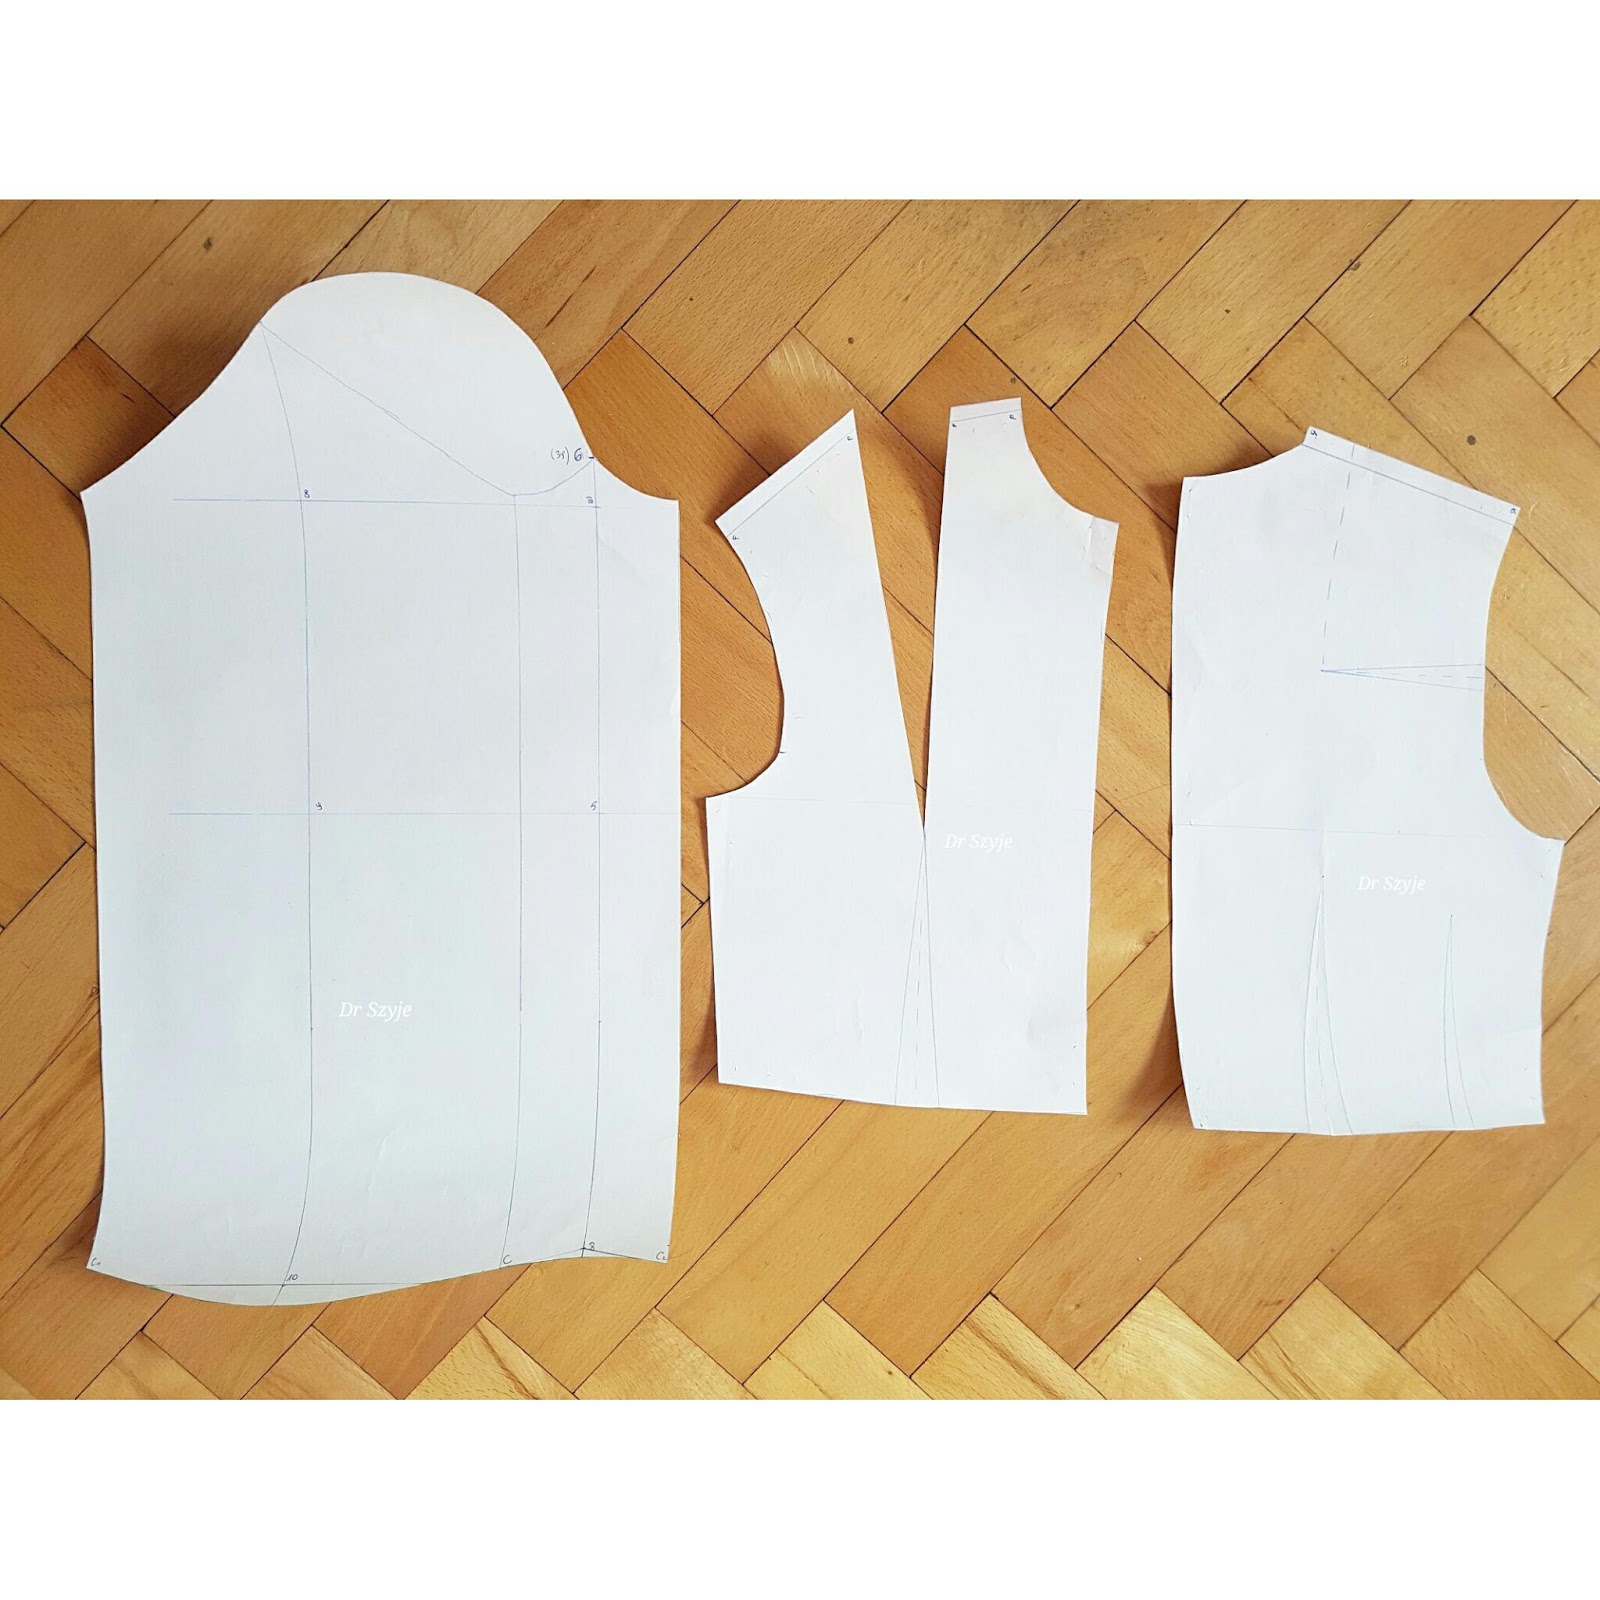 Konstrukcja formy bluzki dopasowanej